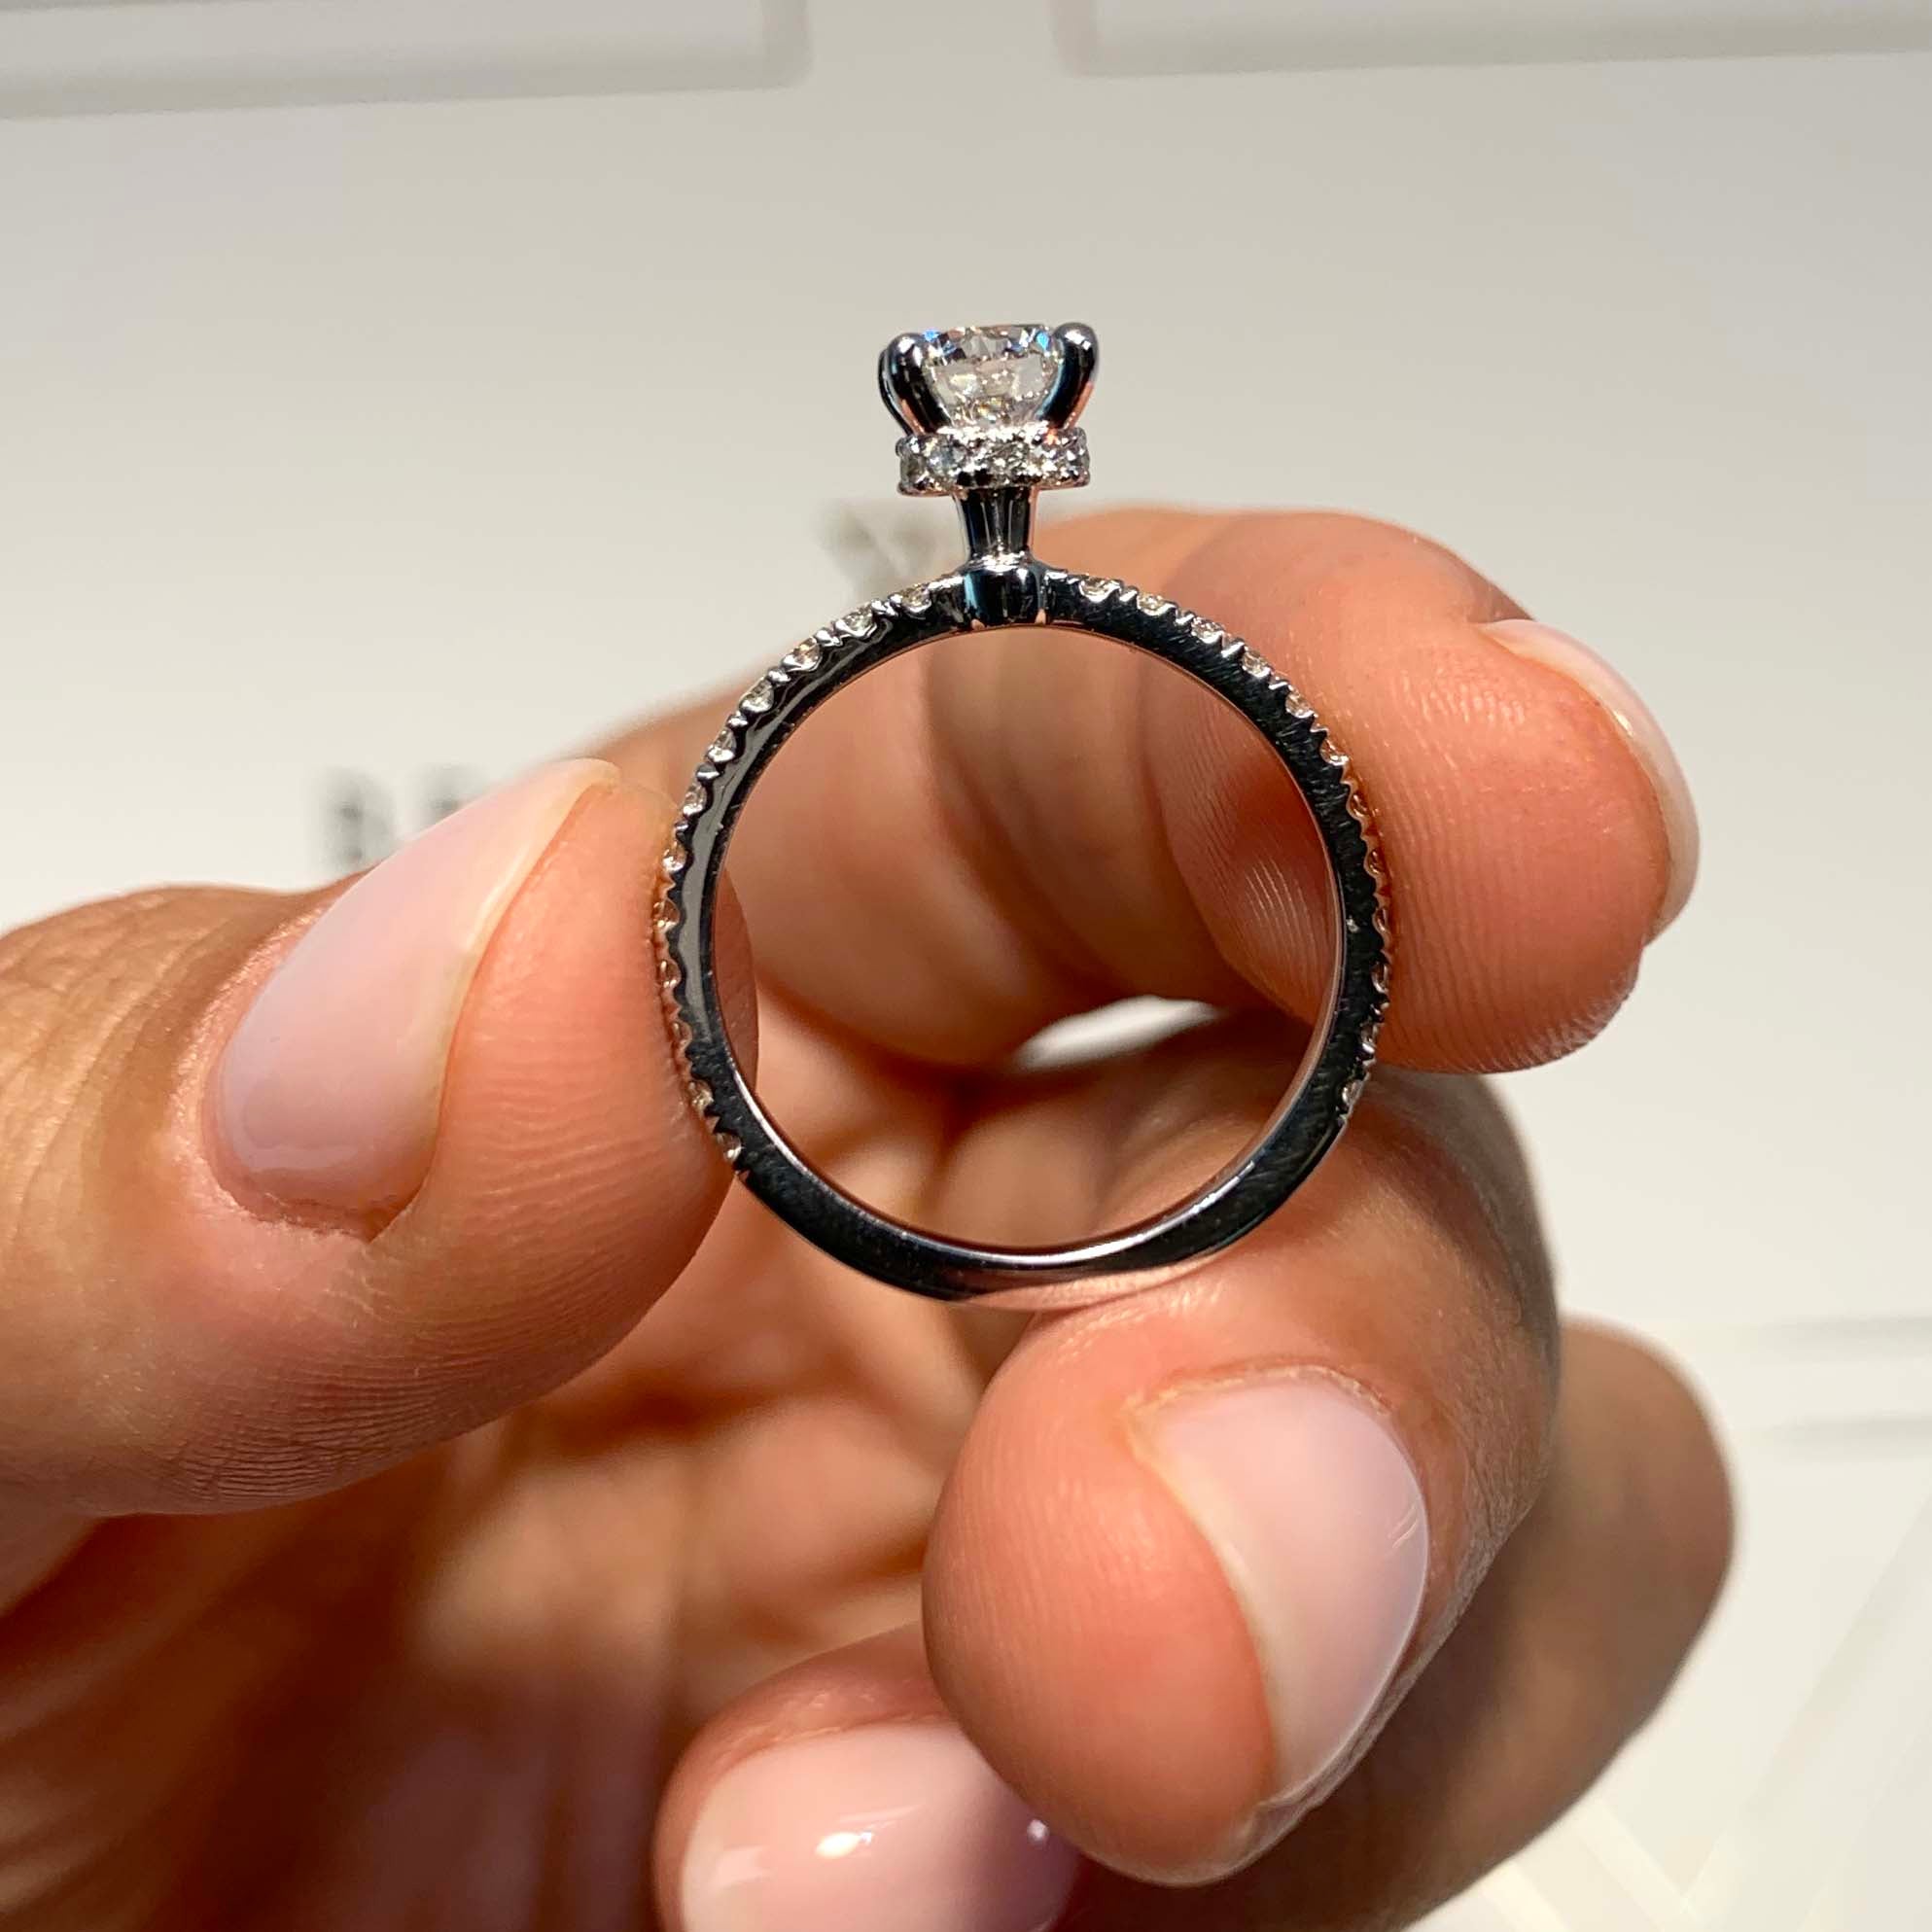 Vivienne Lab Grown Diamond Ring   (0.8 Carat) - 18K White Gold